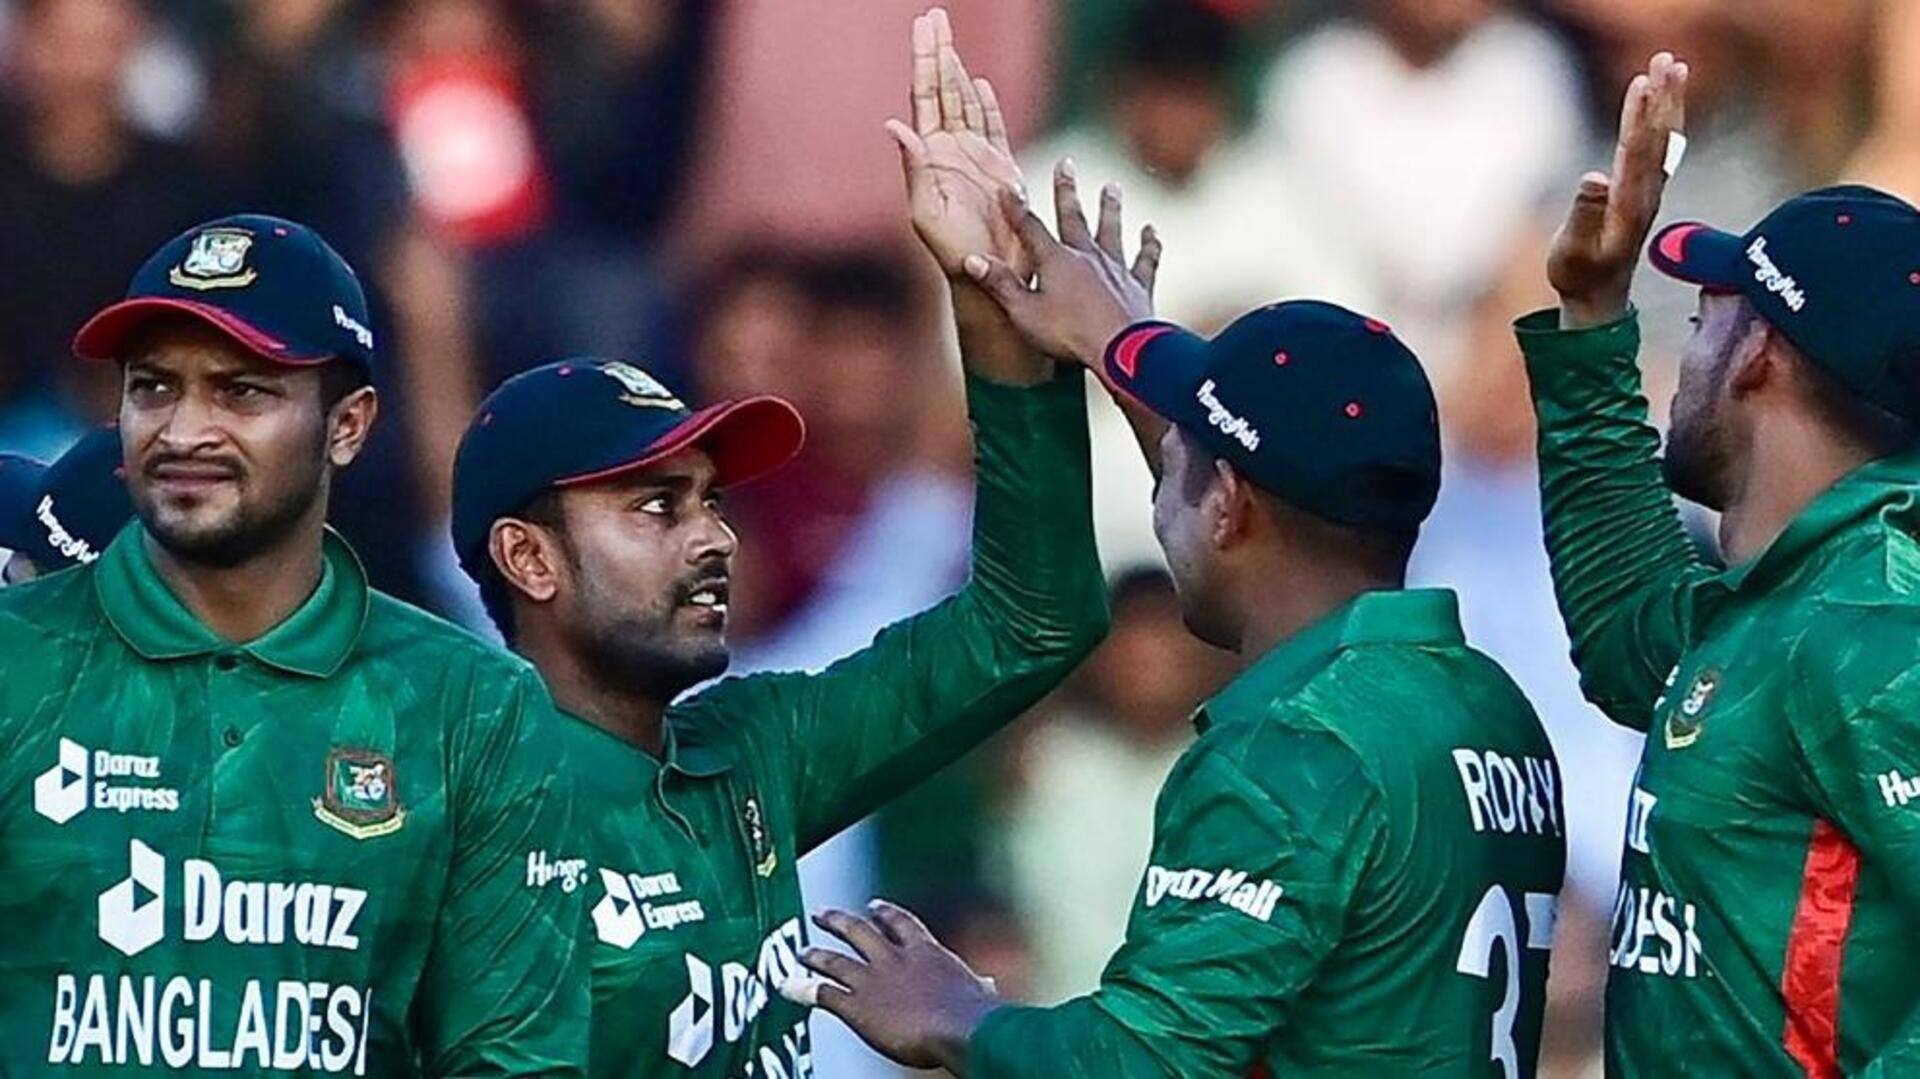 #NewsBytesExplainer: क्रिकेट में बड़े उलटफेर करने के लिए जानी जाती है बांग्लादेश टीम, जानिए पूरा सफरनामा 